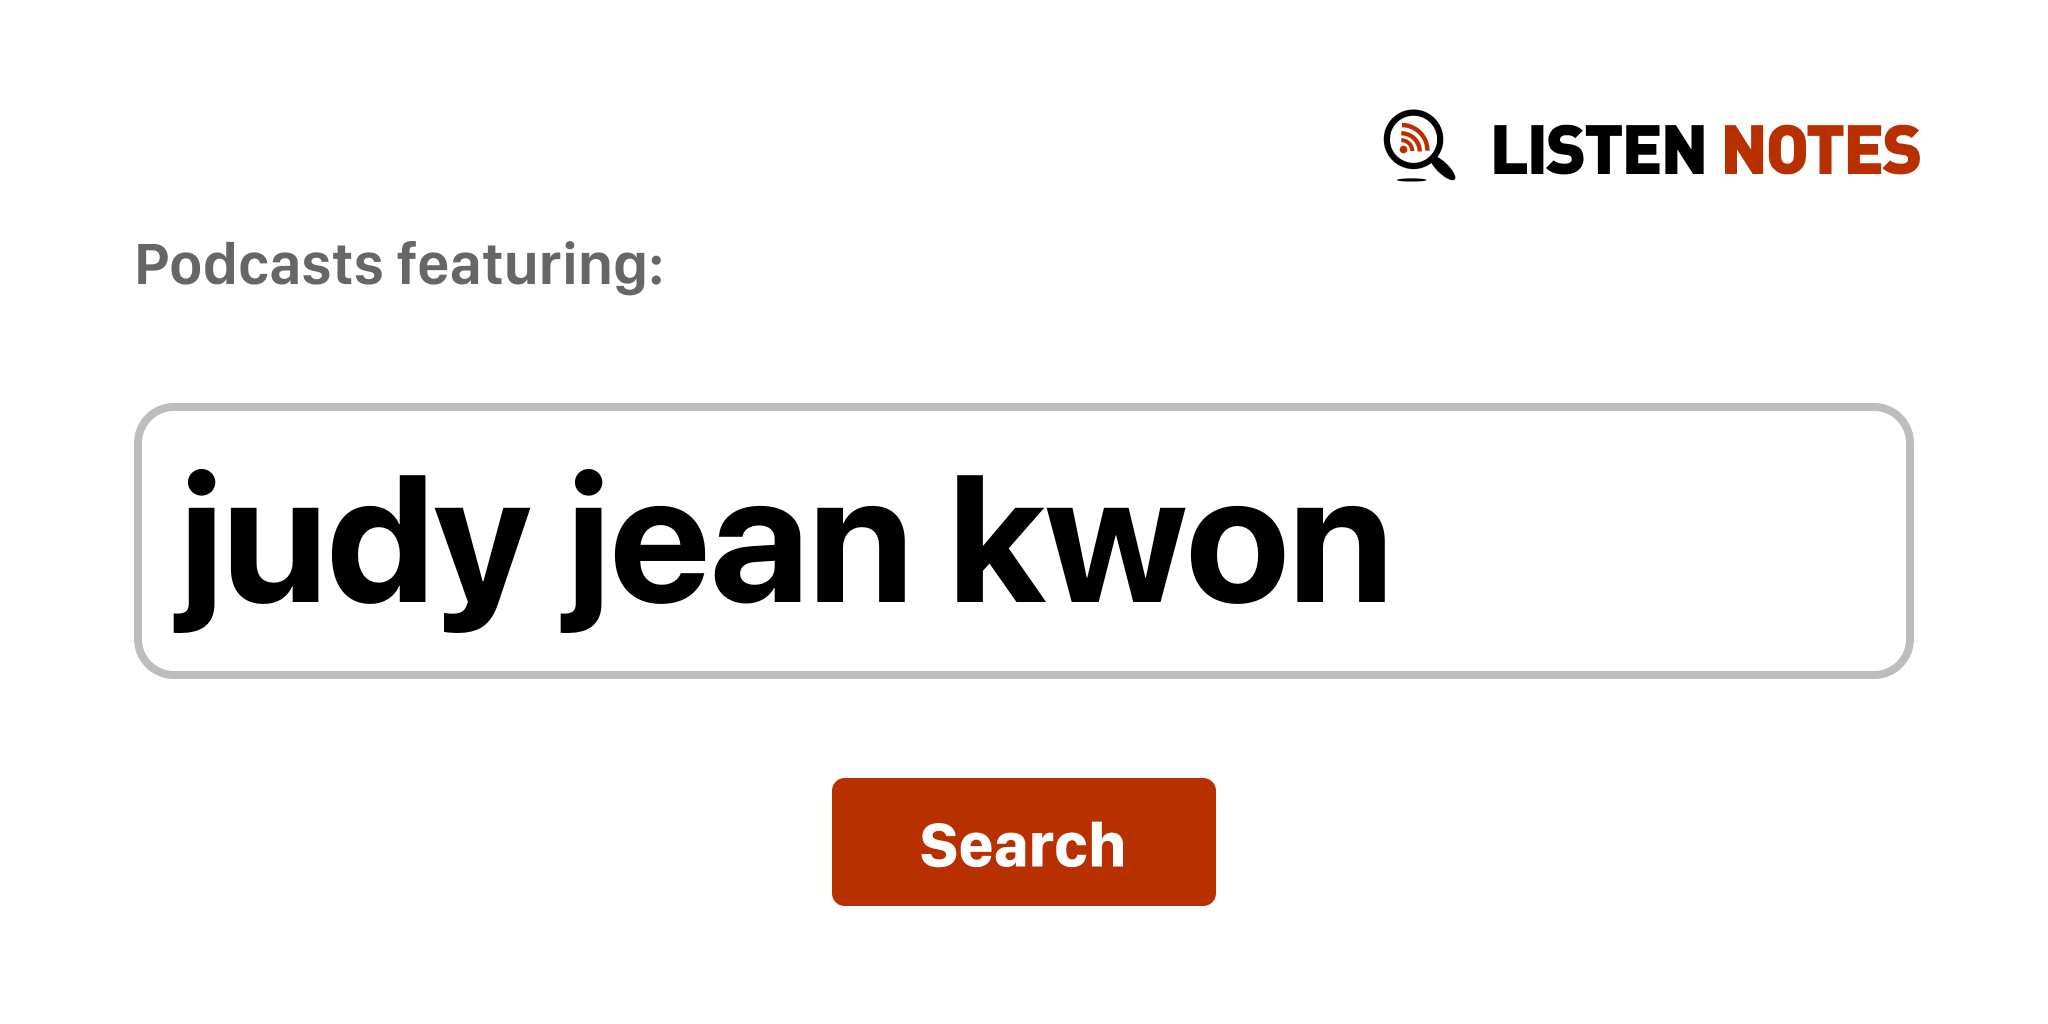 Judy jean kwon